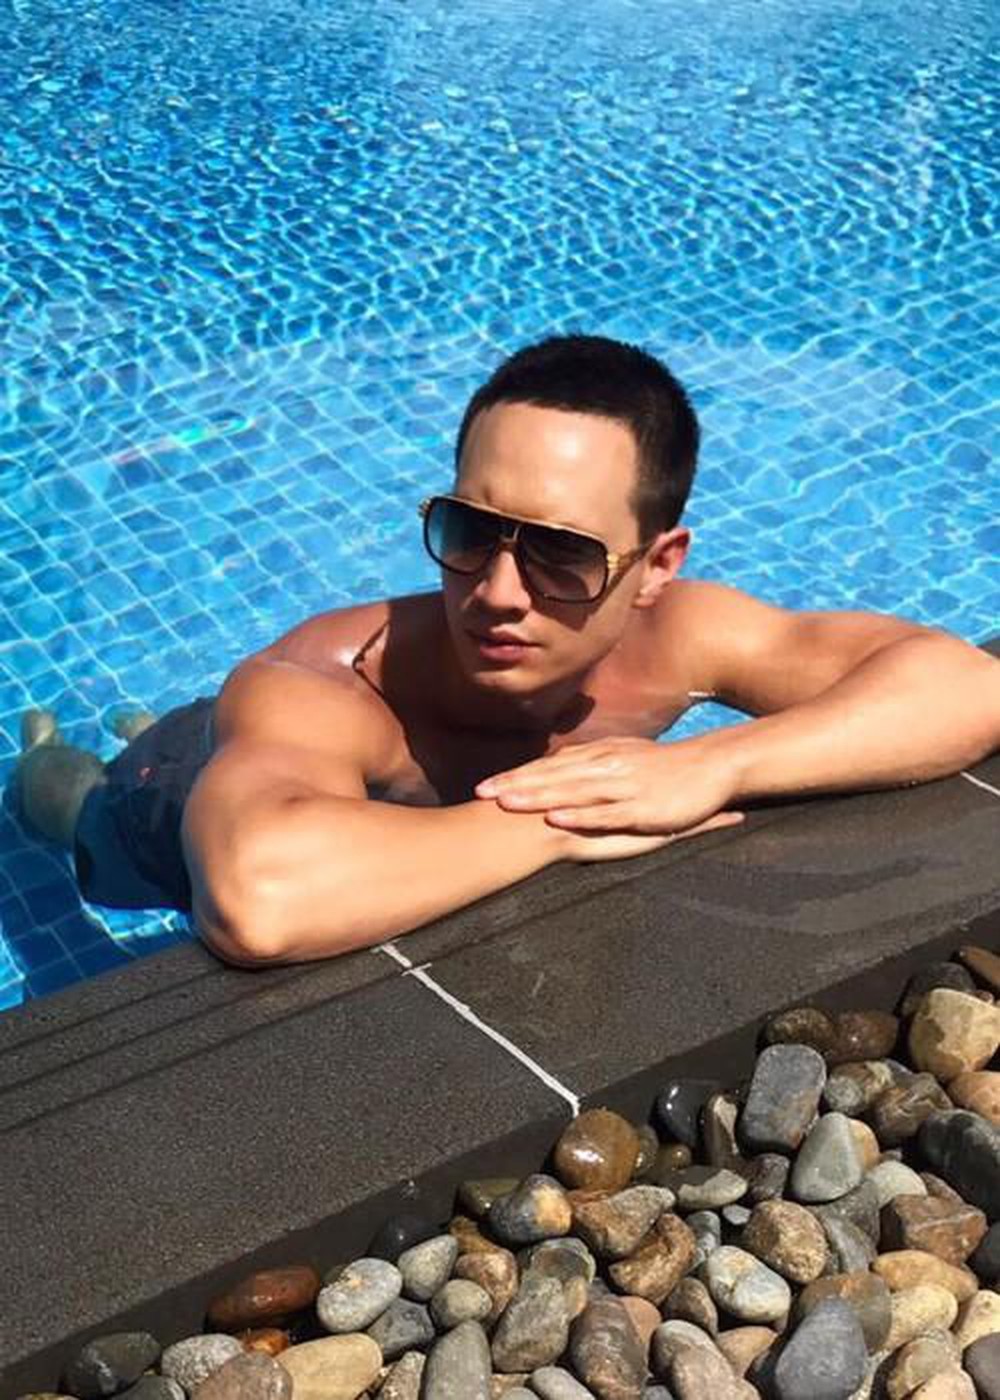  
Kim Lý lại chọn chiếc quần short đen đơn giản để đi bơi, nam diễn viên không quên đeo mắt kính đen to bản để tăng tính thời trang. 